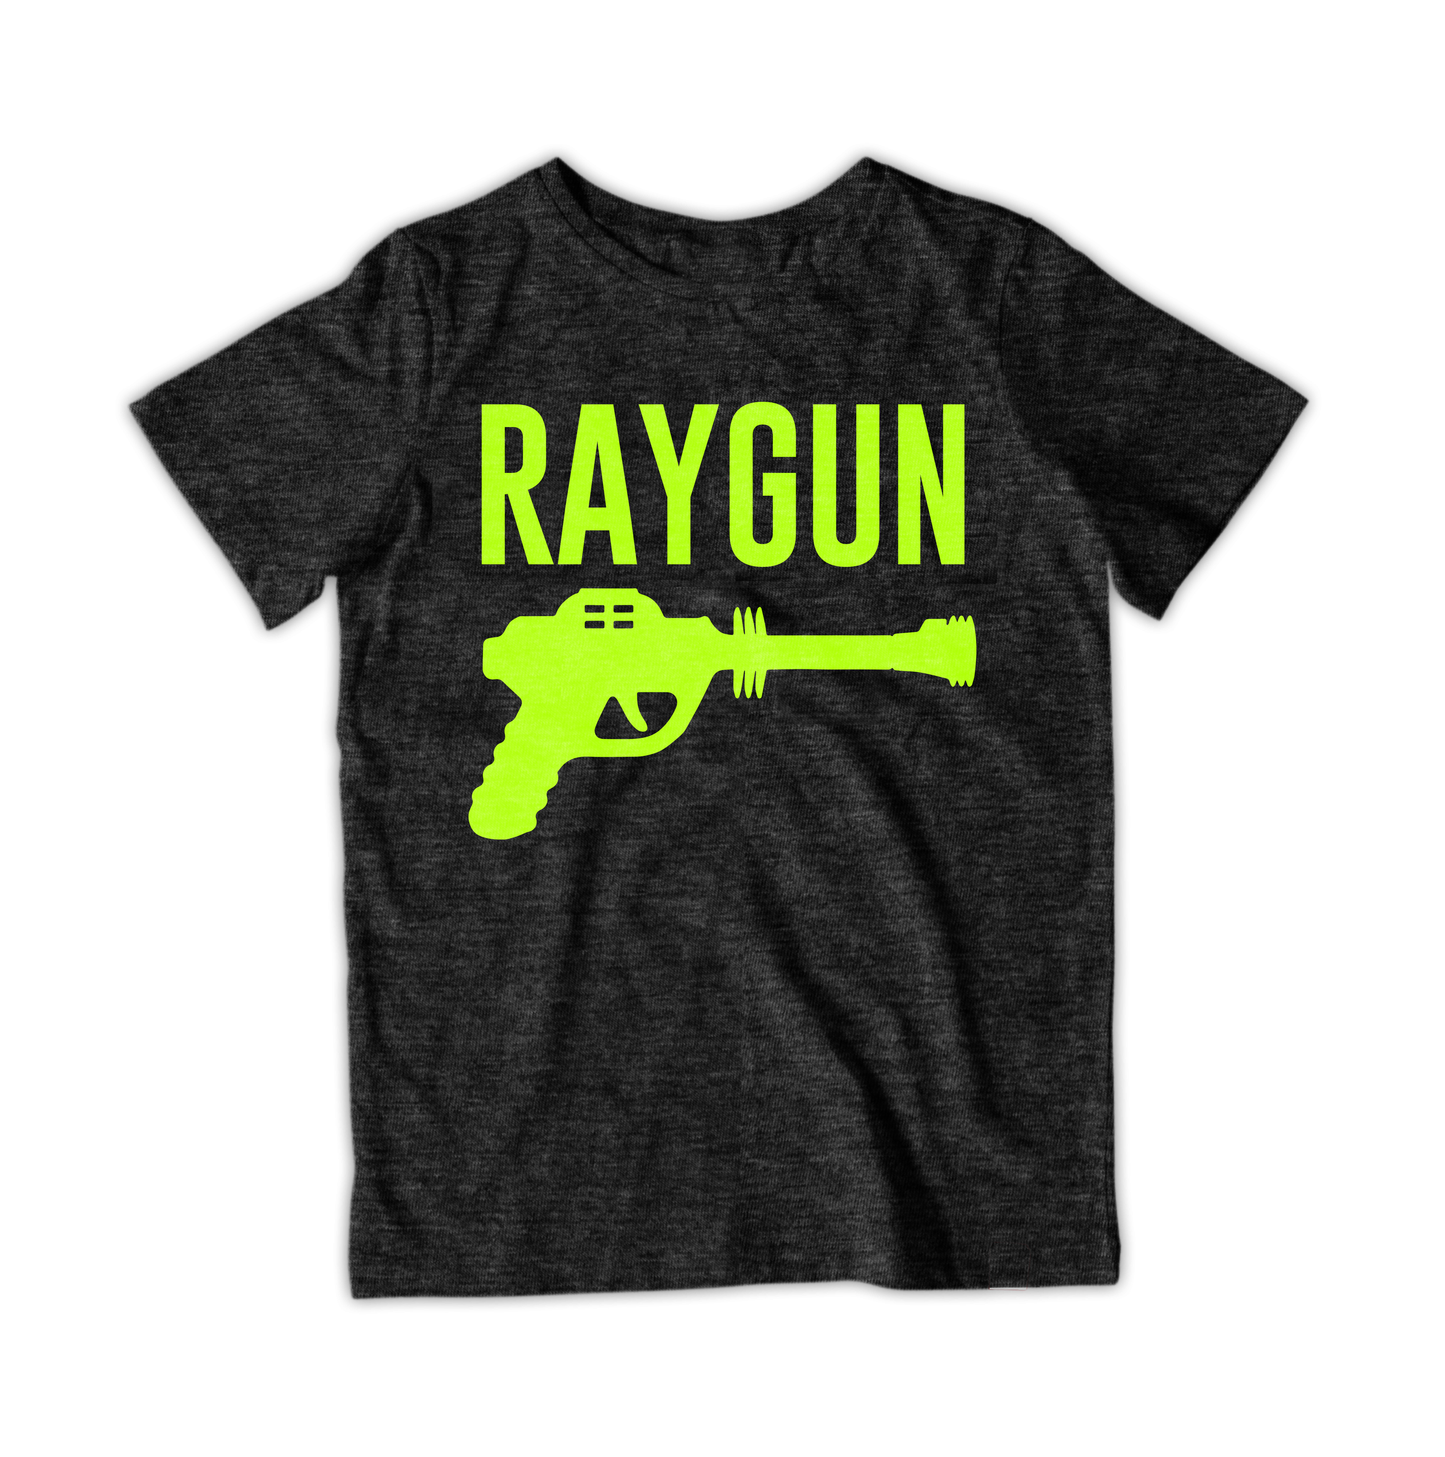 RAYGUN Single Gun Neon Yellow T-Shirt